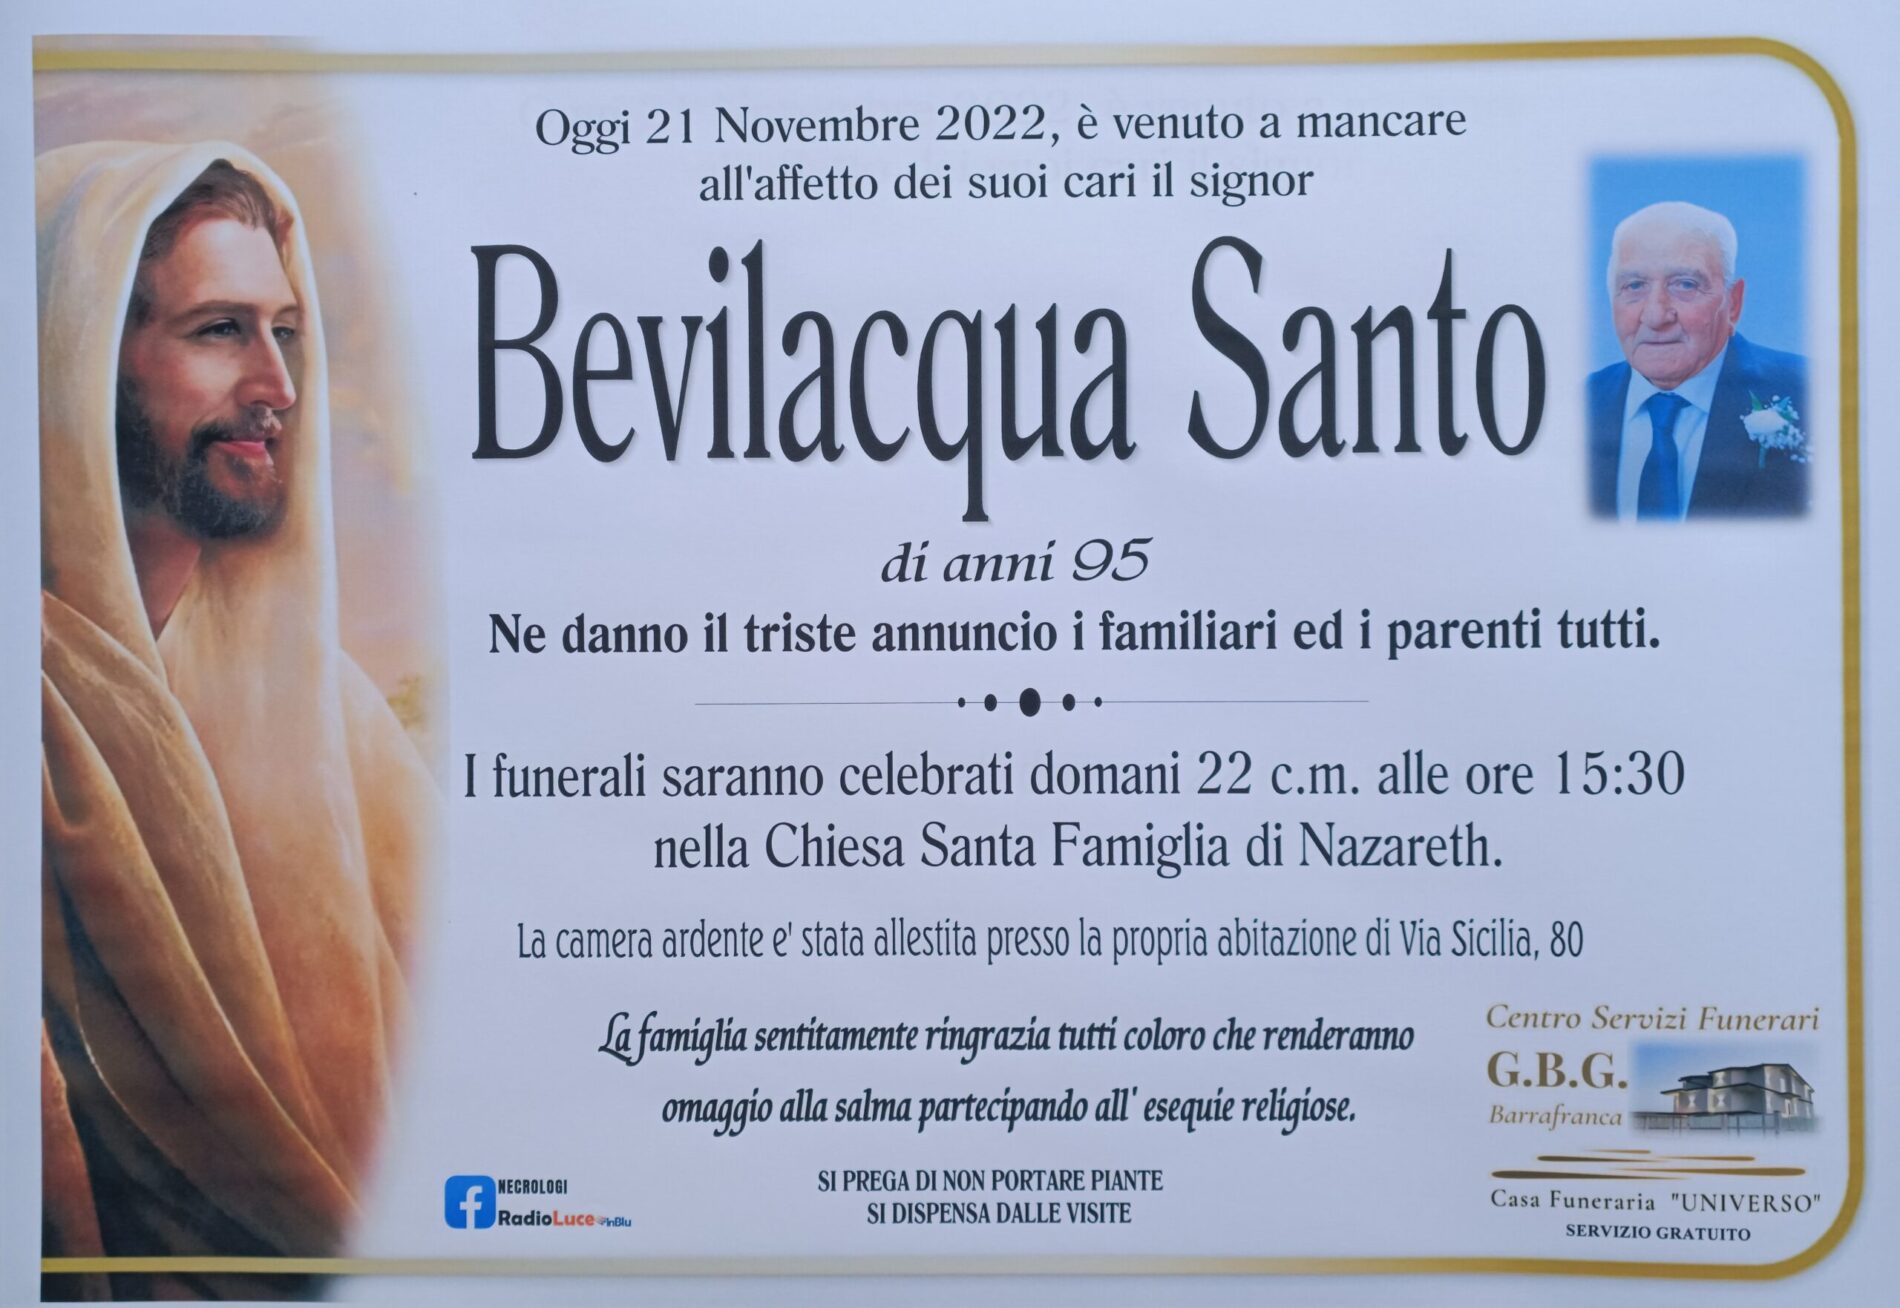 ANNUNCIO CENTRO SERVIZI FUNERARI G.B.G. Sig. Bevilacqua Santo  di anni 95